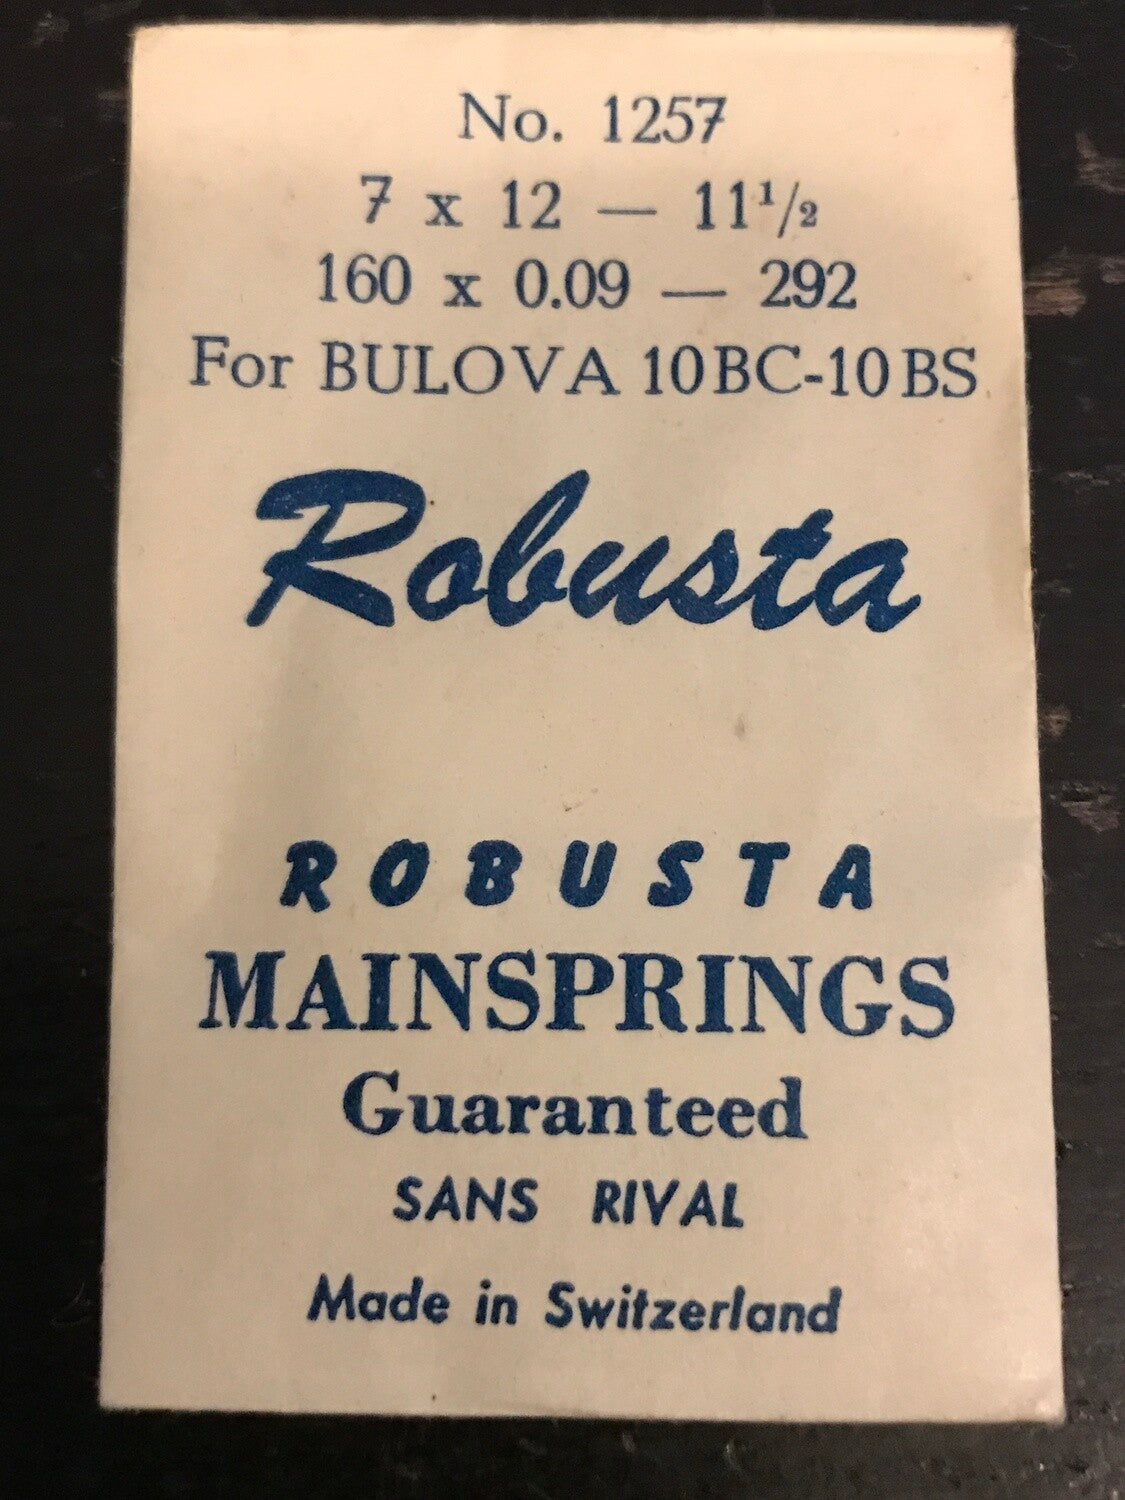 Robusta Mainspring No. 1257 for Bulova 10BC, 10BS - Steel